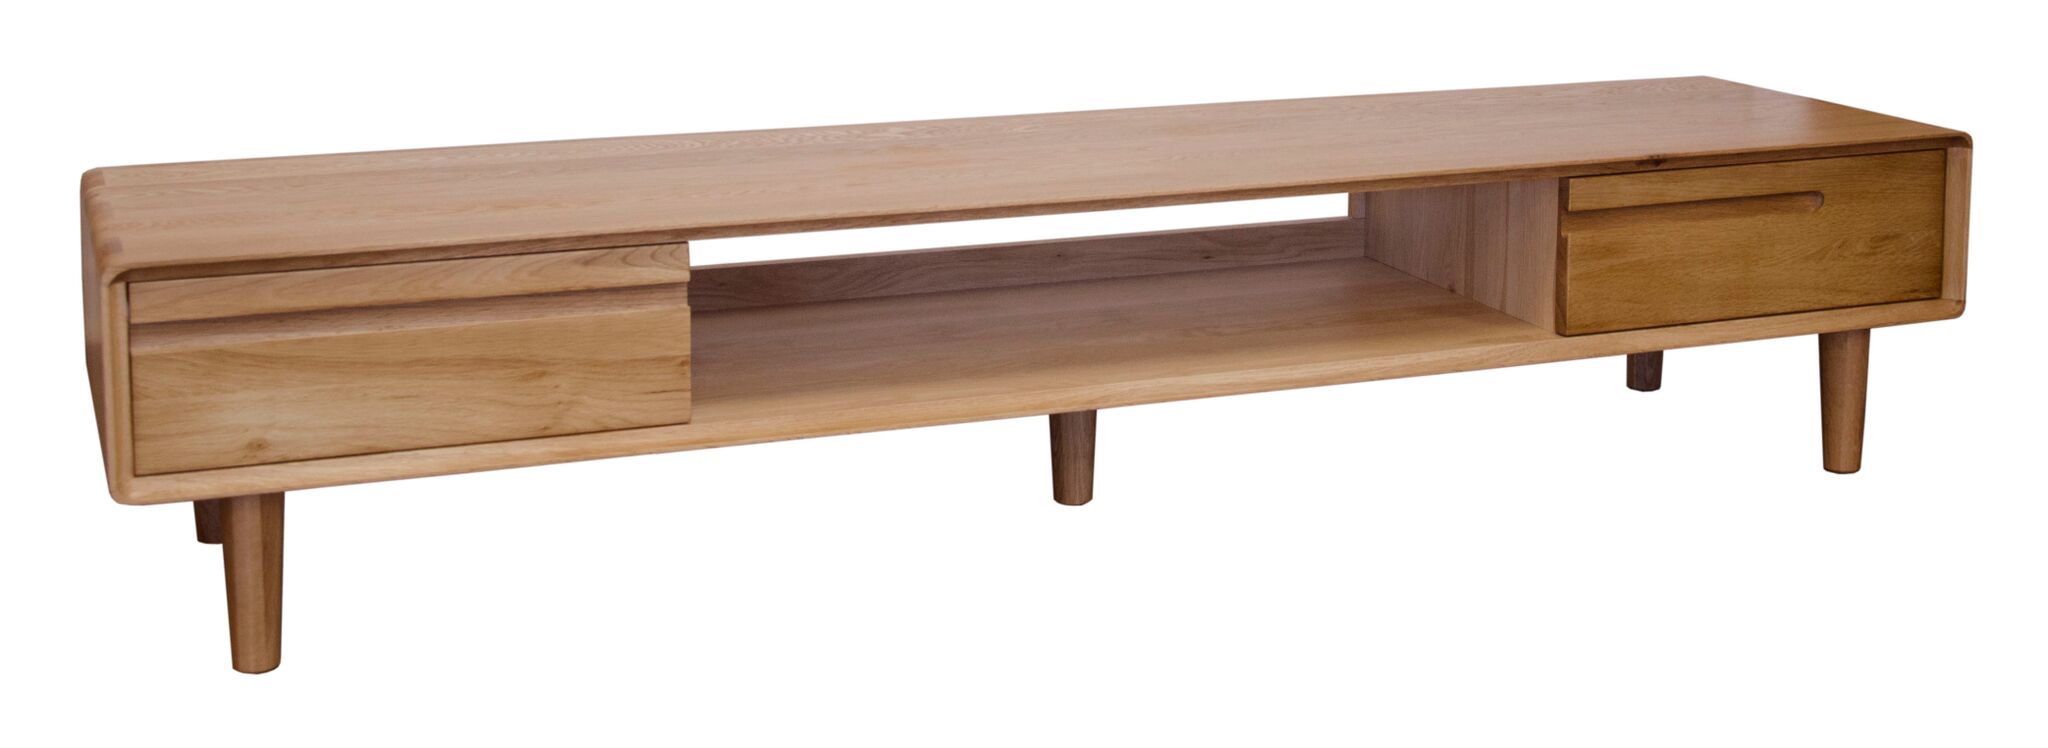 Nordic Scandic Oak Furniture, wide TV unit - from Top Secret Furniture